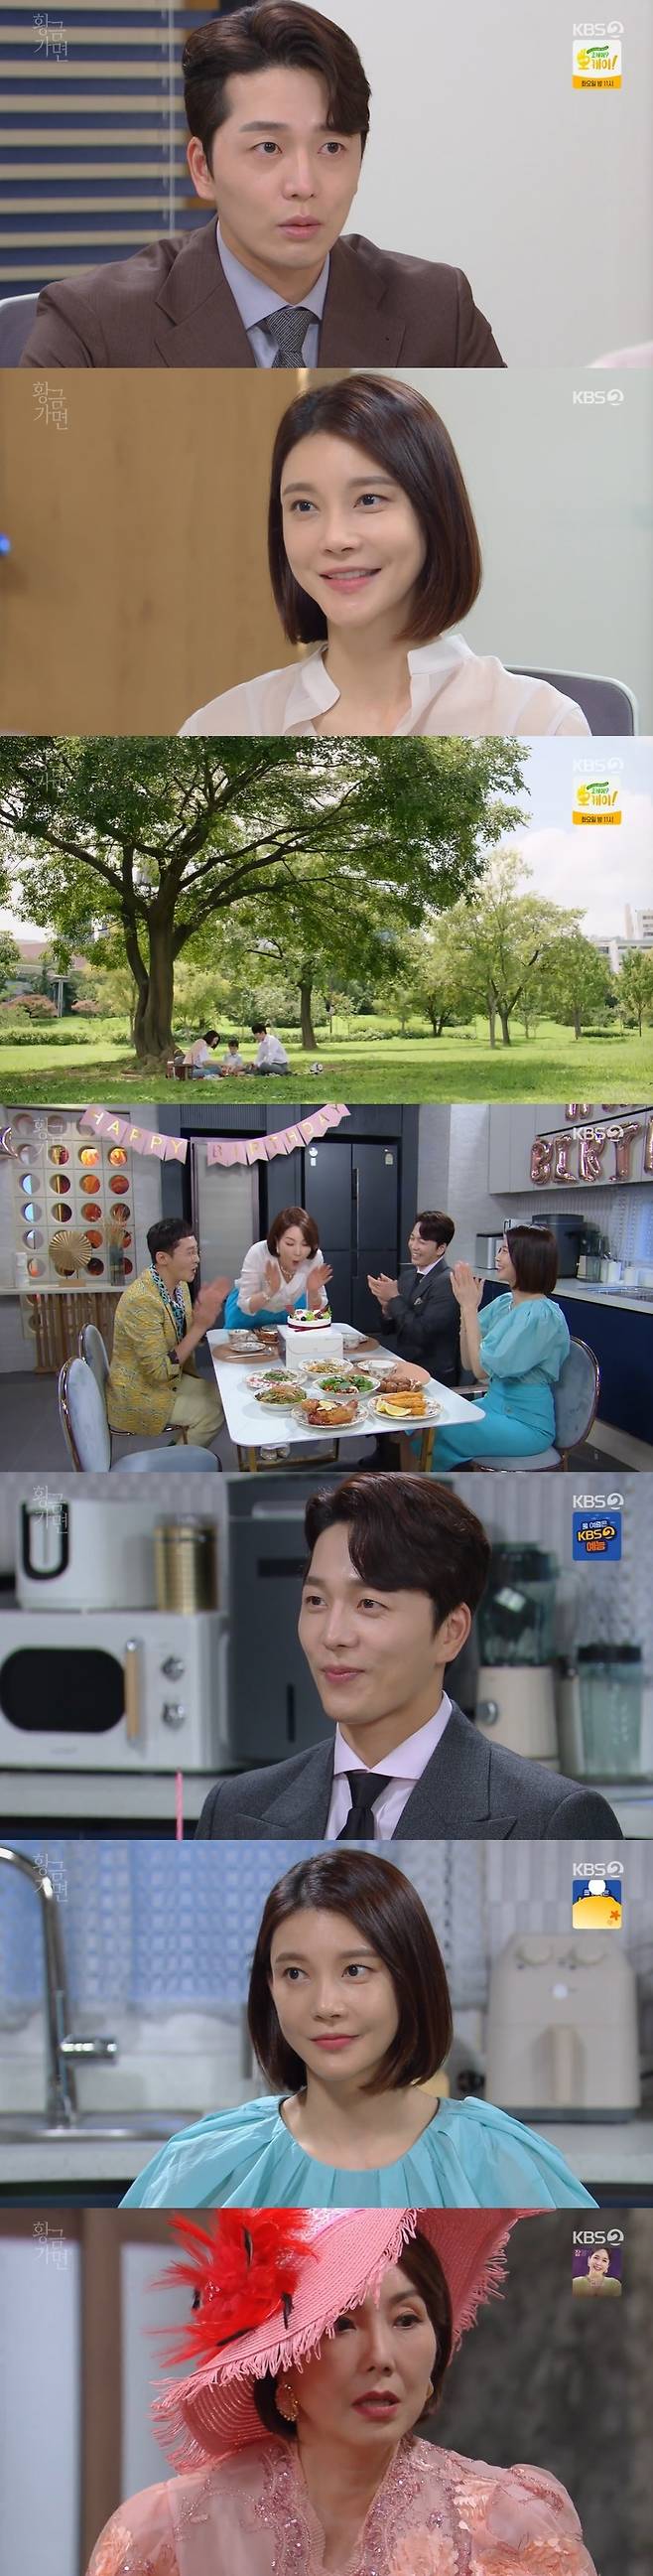 KBS 2TV '황금 가면' 캡처